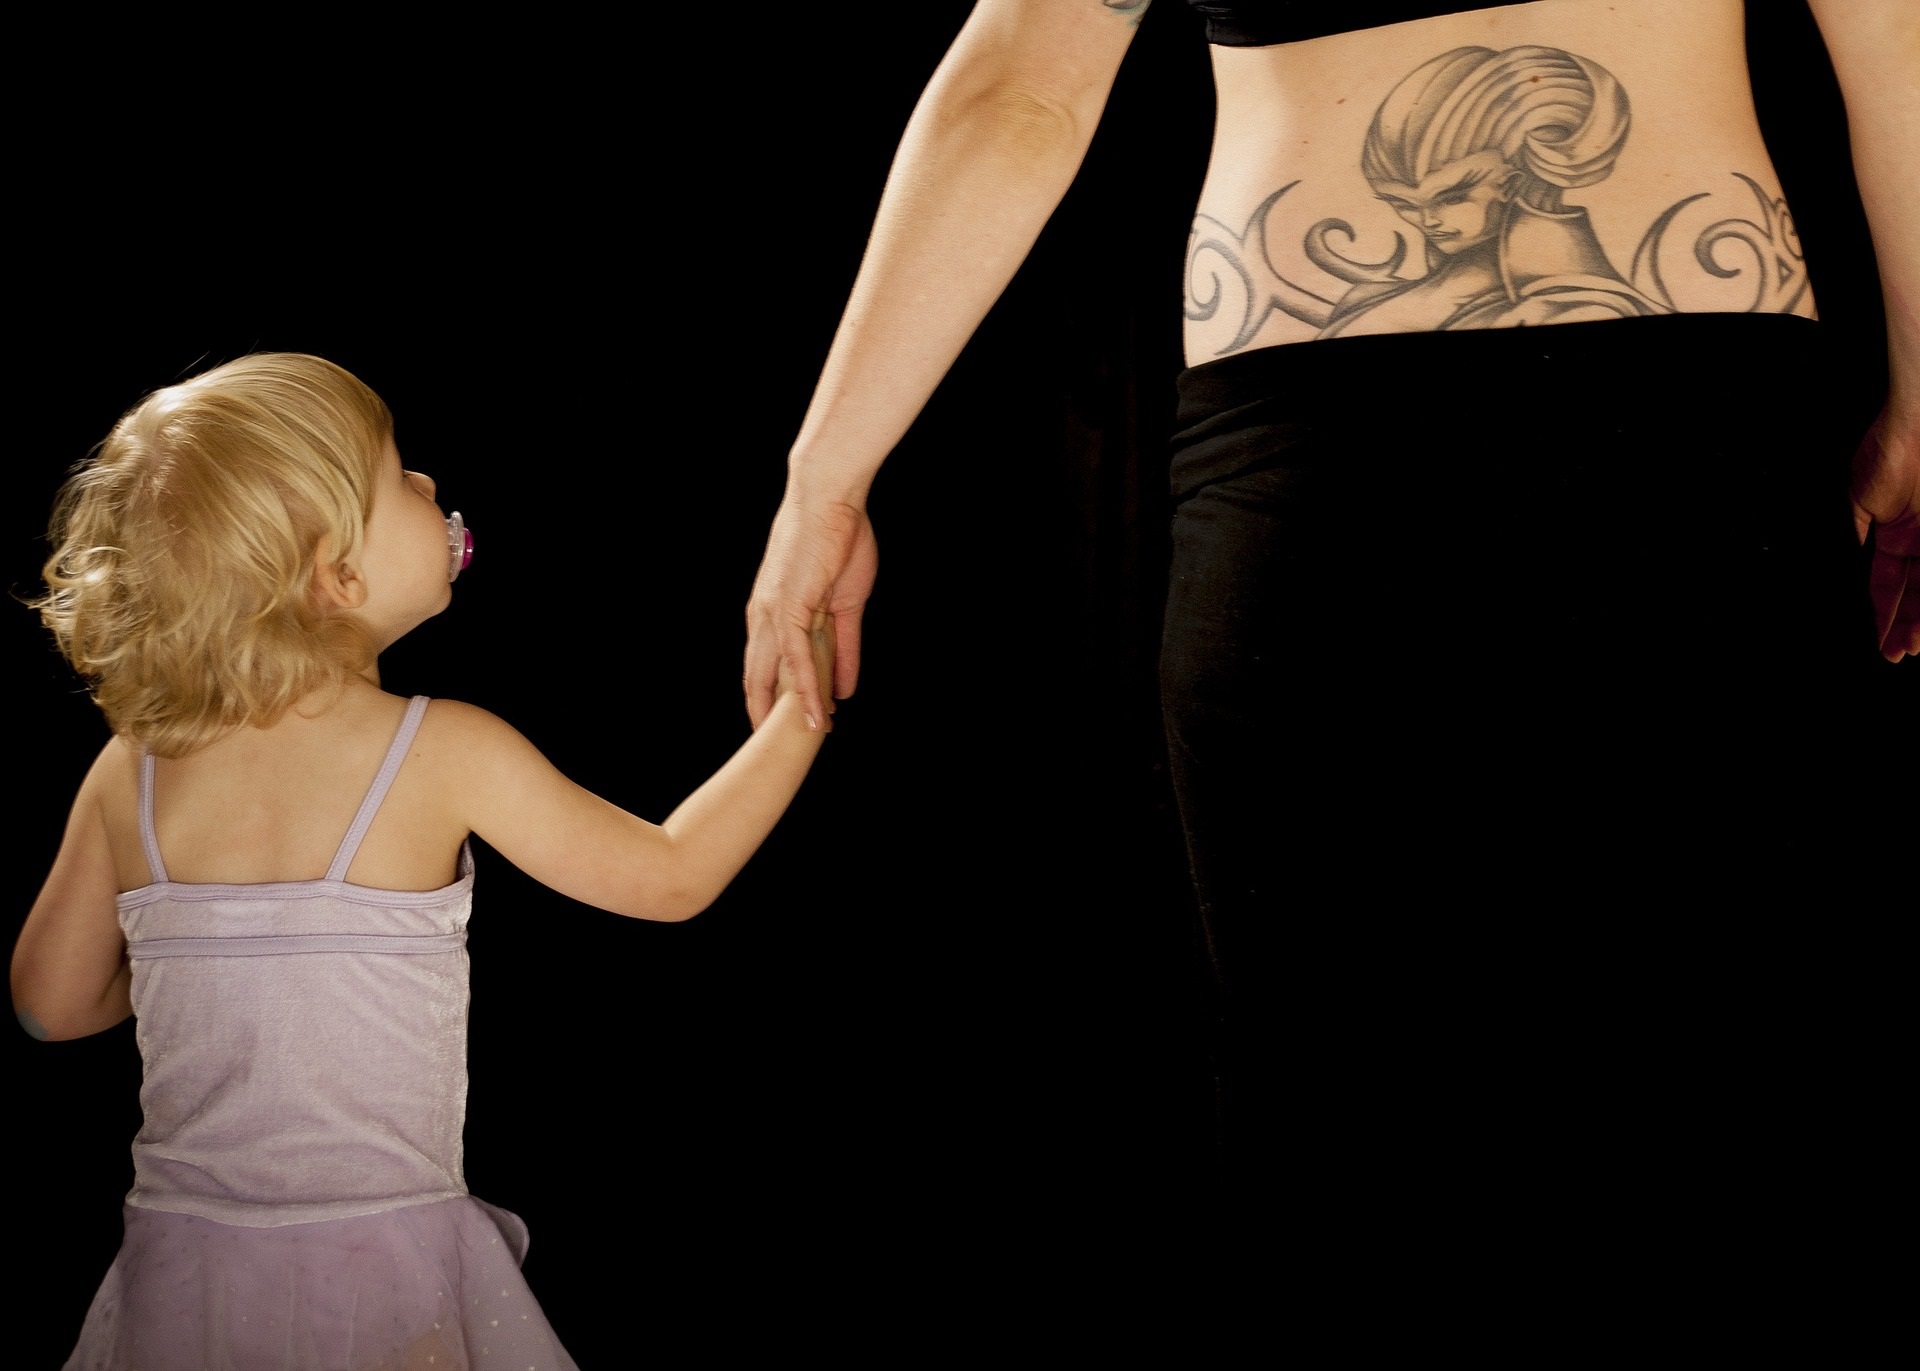 Le più belle frasi per tatuaggi da dedicare ai figli